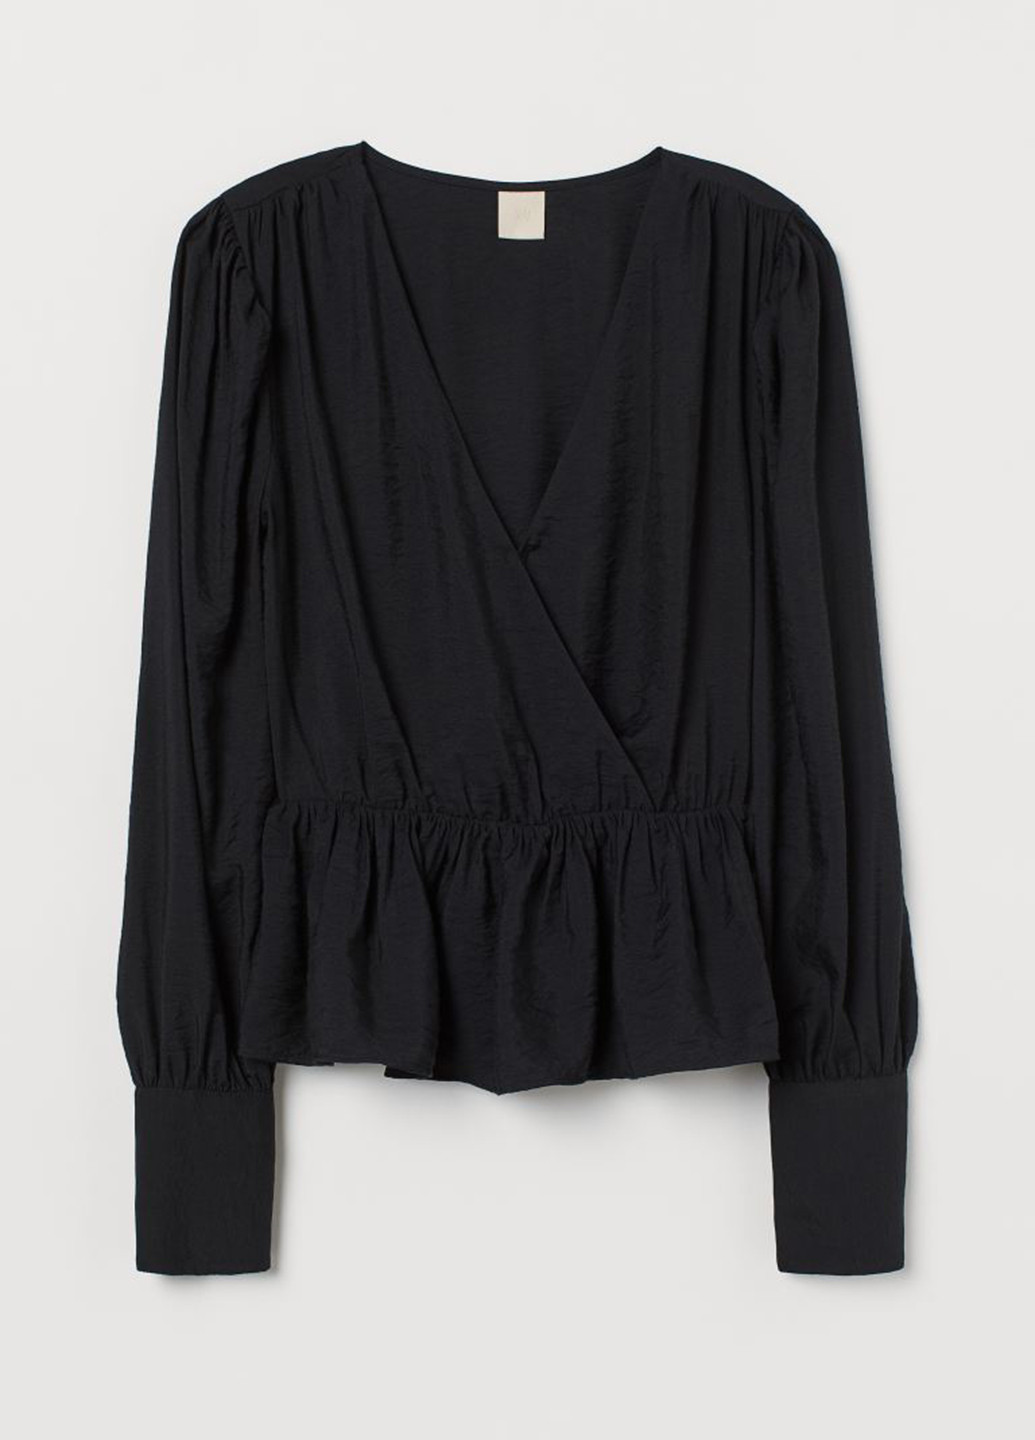 Чёрная блузка на запах H&M